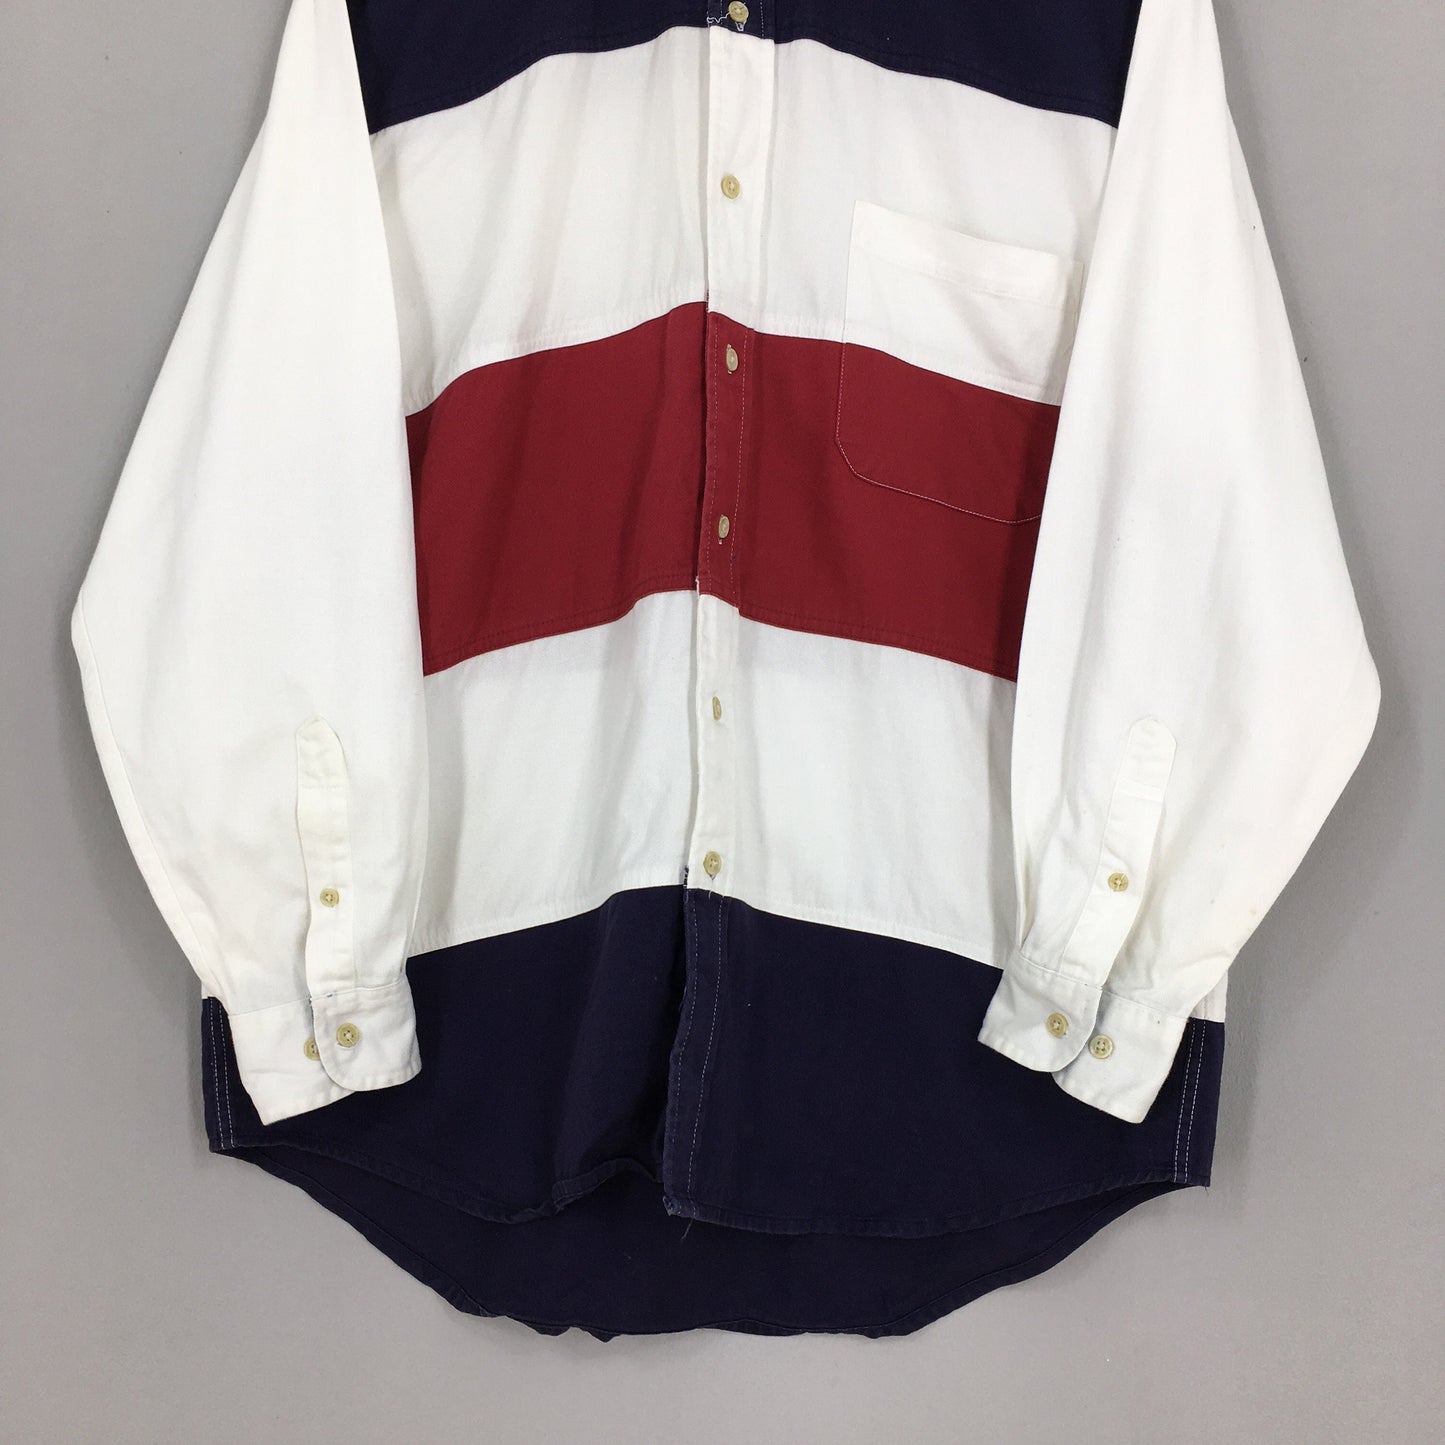 Van Heusen Stripes Multicolor Jeans Oxfords Shirt